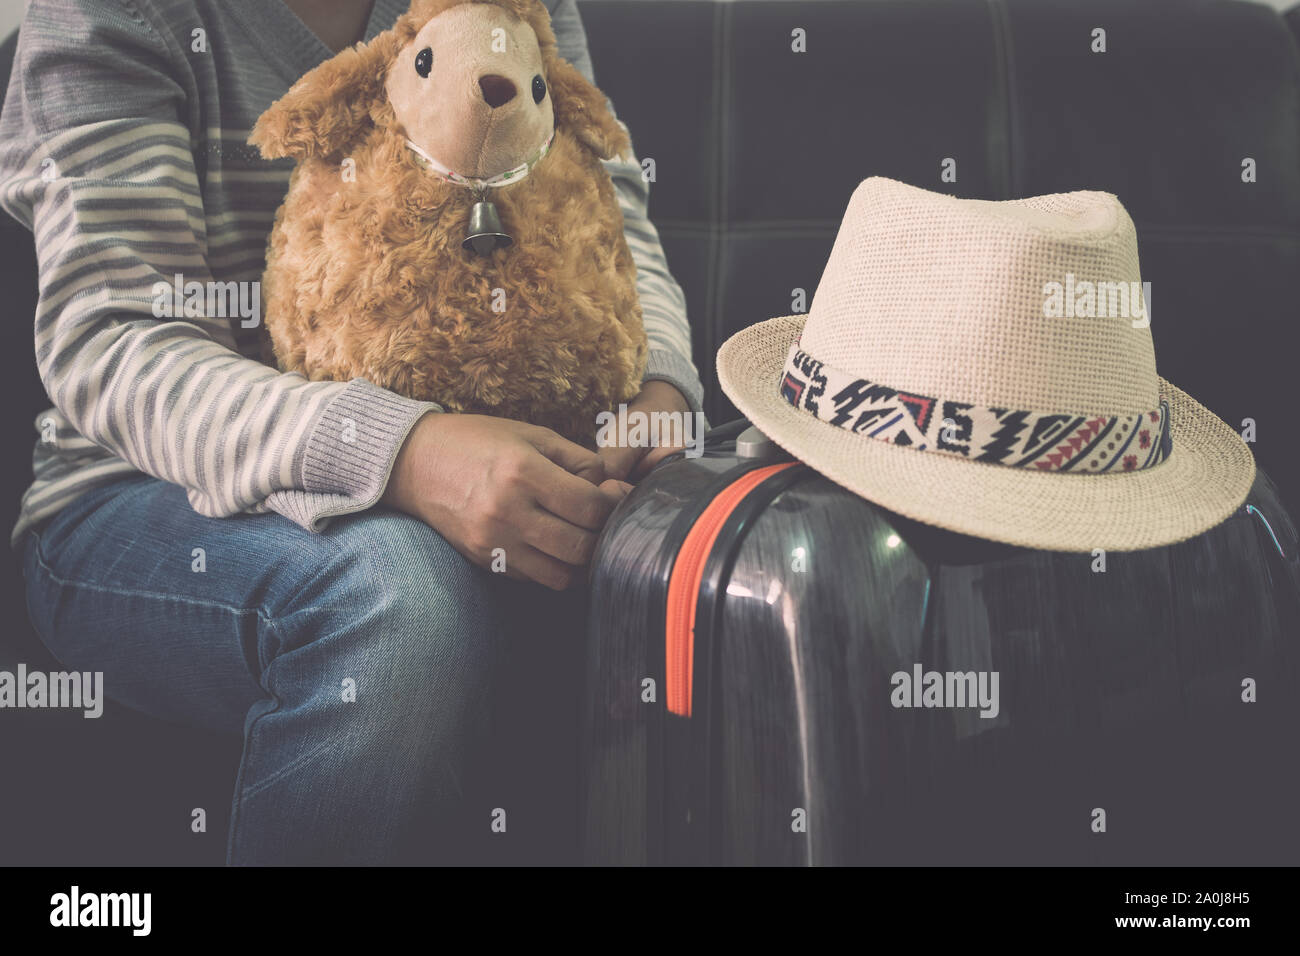 Voyageuses avec le sien les moutons poupée, sac de voyage et chapeau de paille, en attendant à l'aéroport. Concept de voyage. Banque D'Images